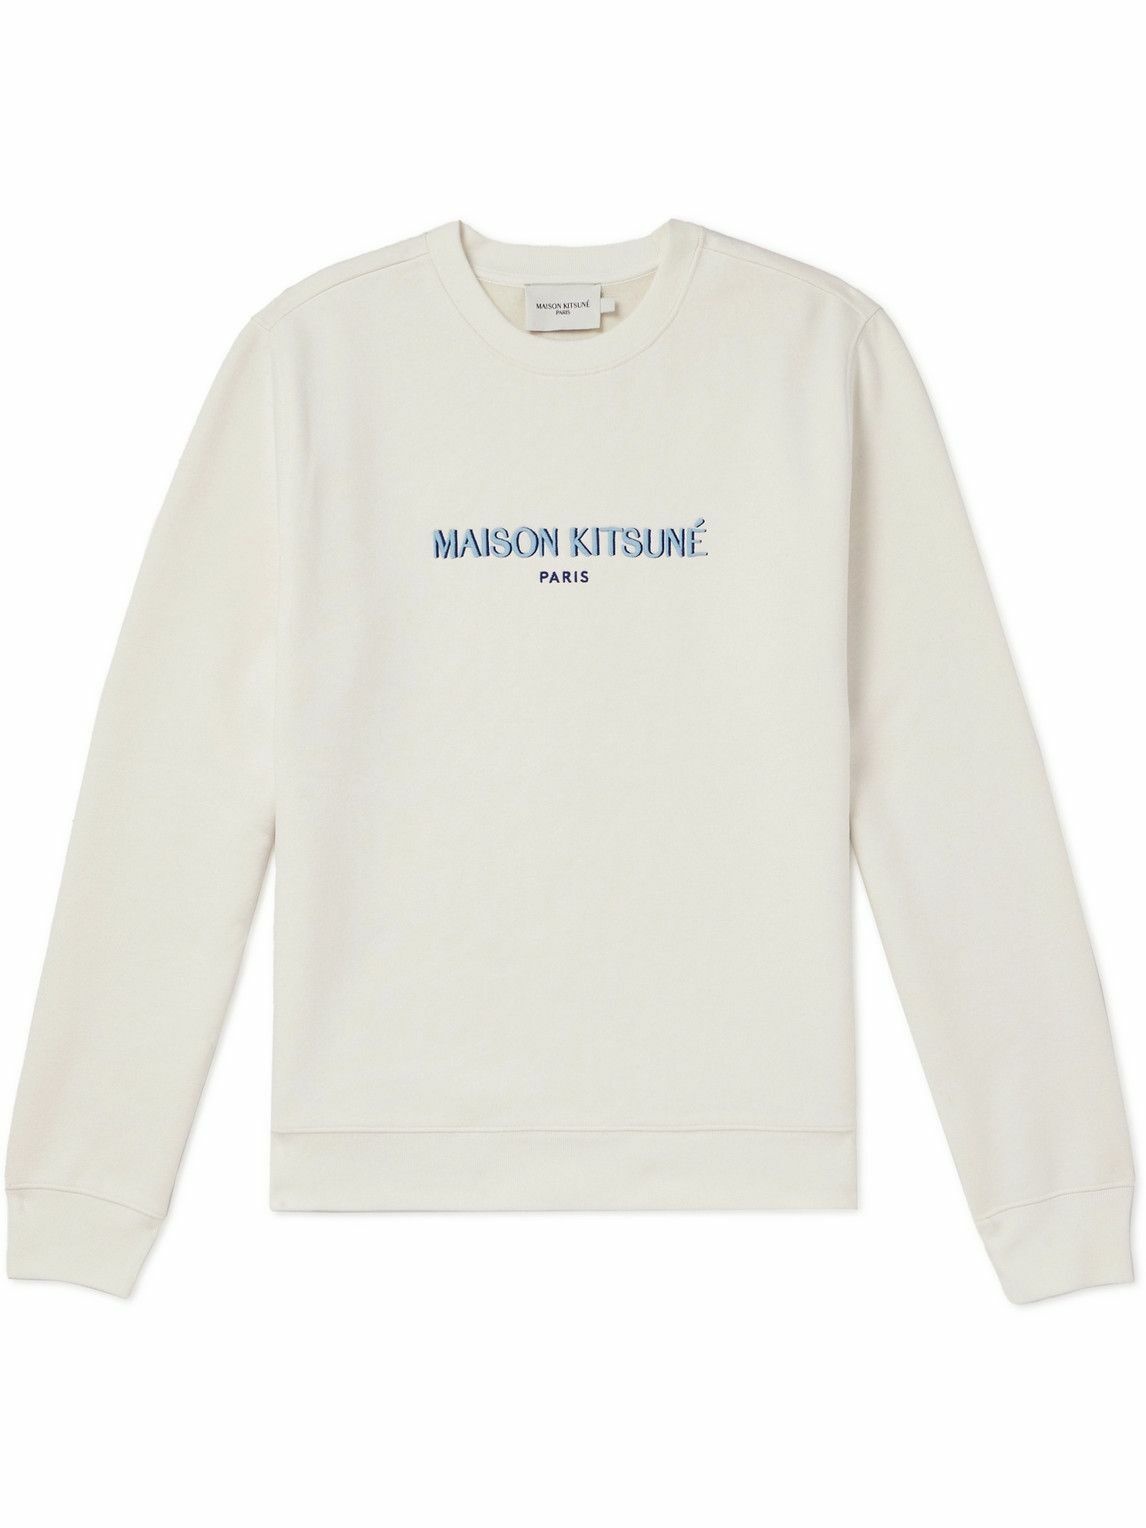 Maison Kitsuné - Paris Logo-Embroidered Cotton-Blend Jersey Sweatshirt ...